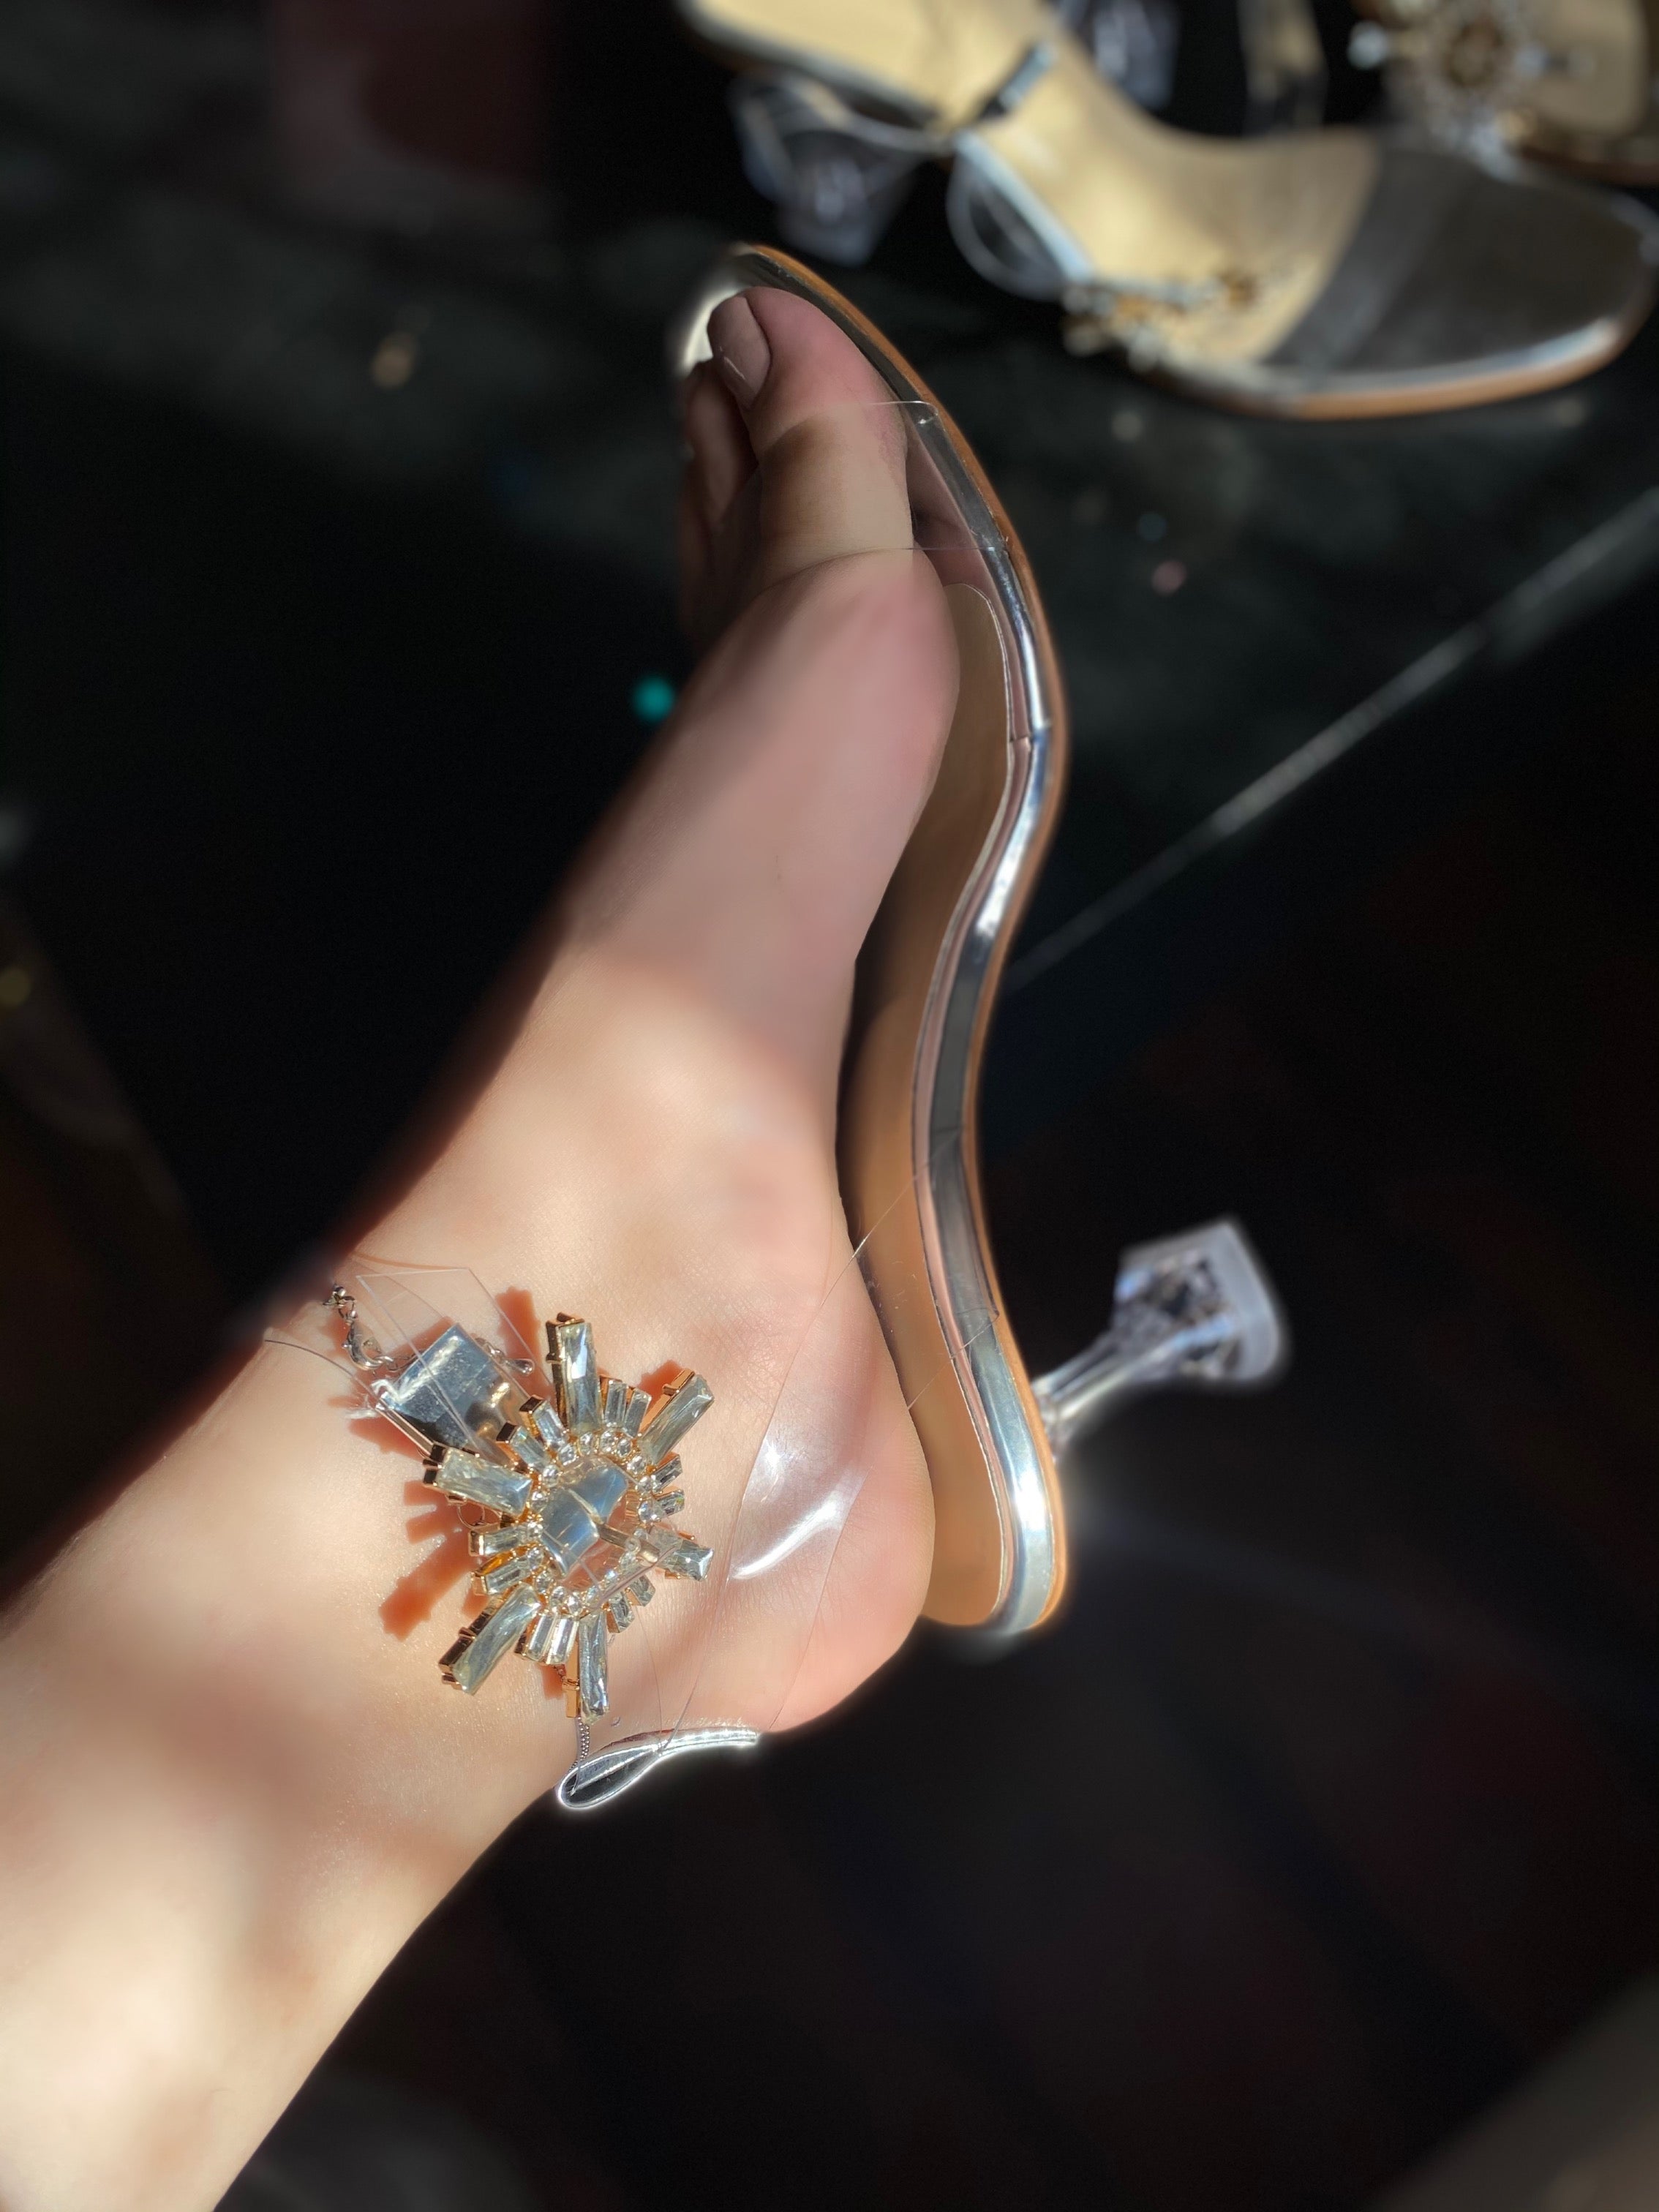 Swetra Crystal Heels - Ovolo Shoes